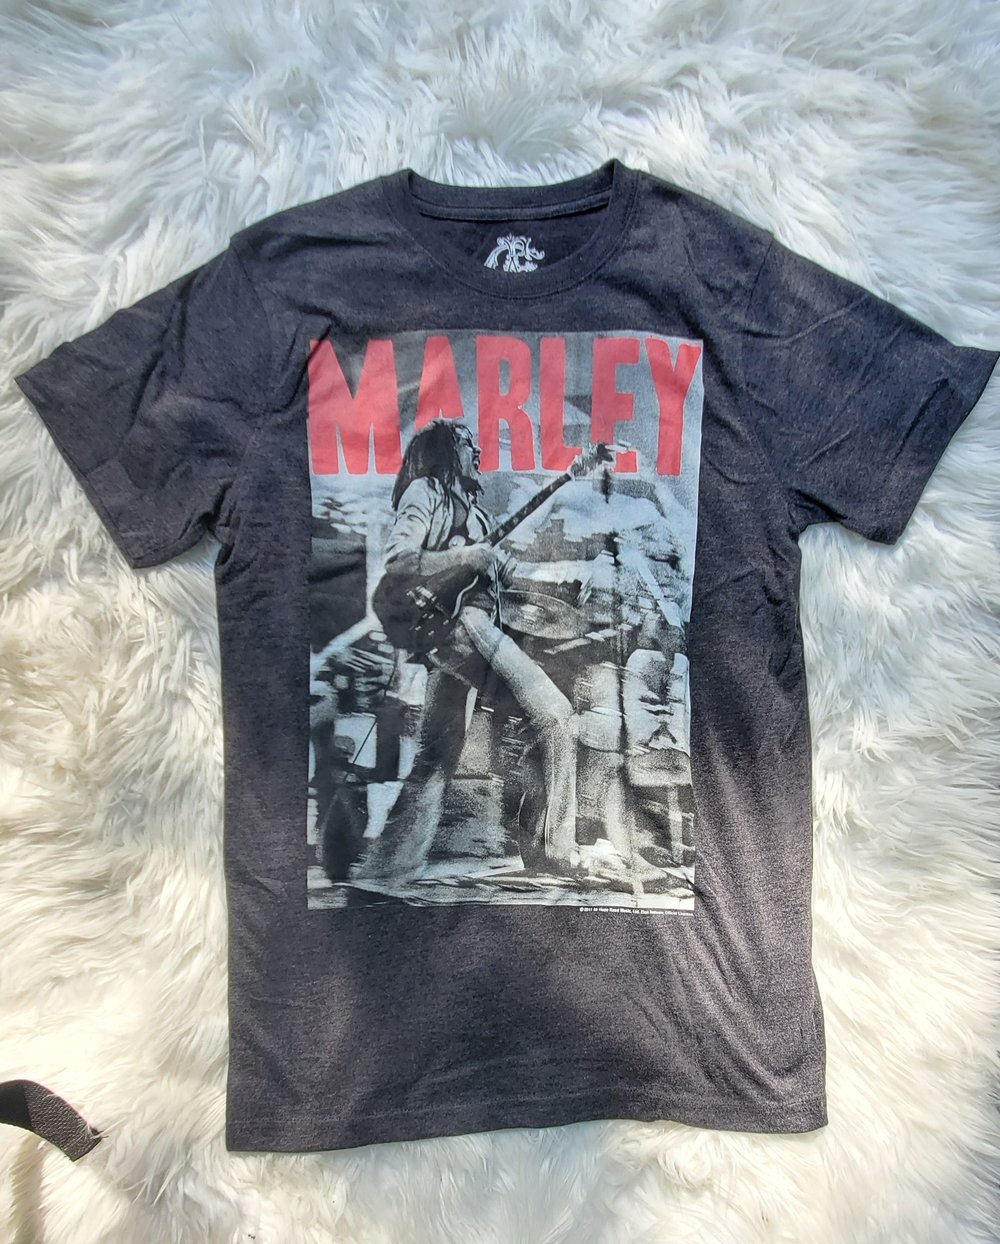 Marley in Concert Bob Marley Shirt